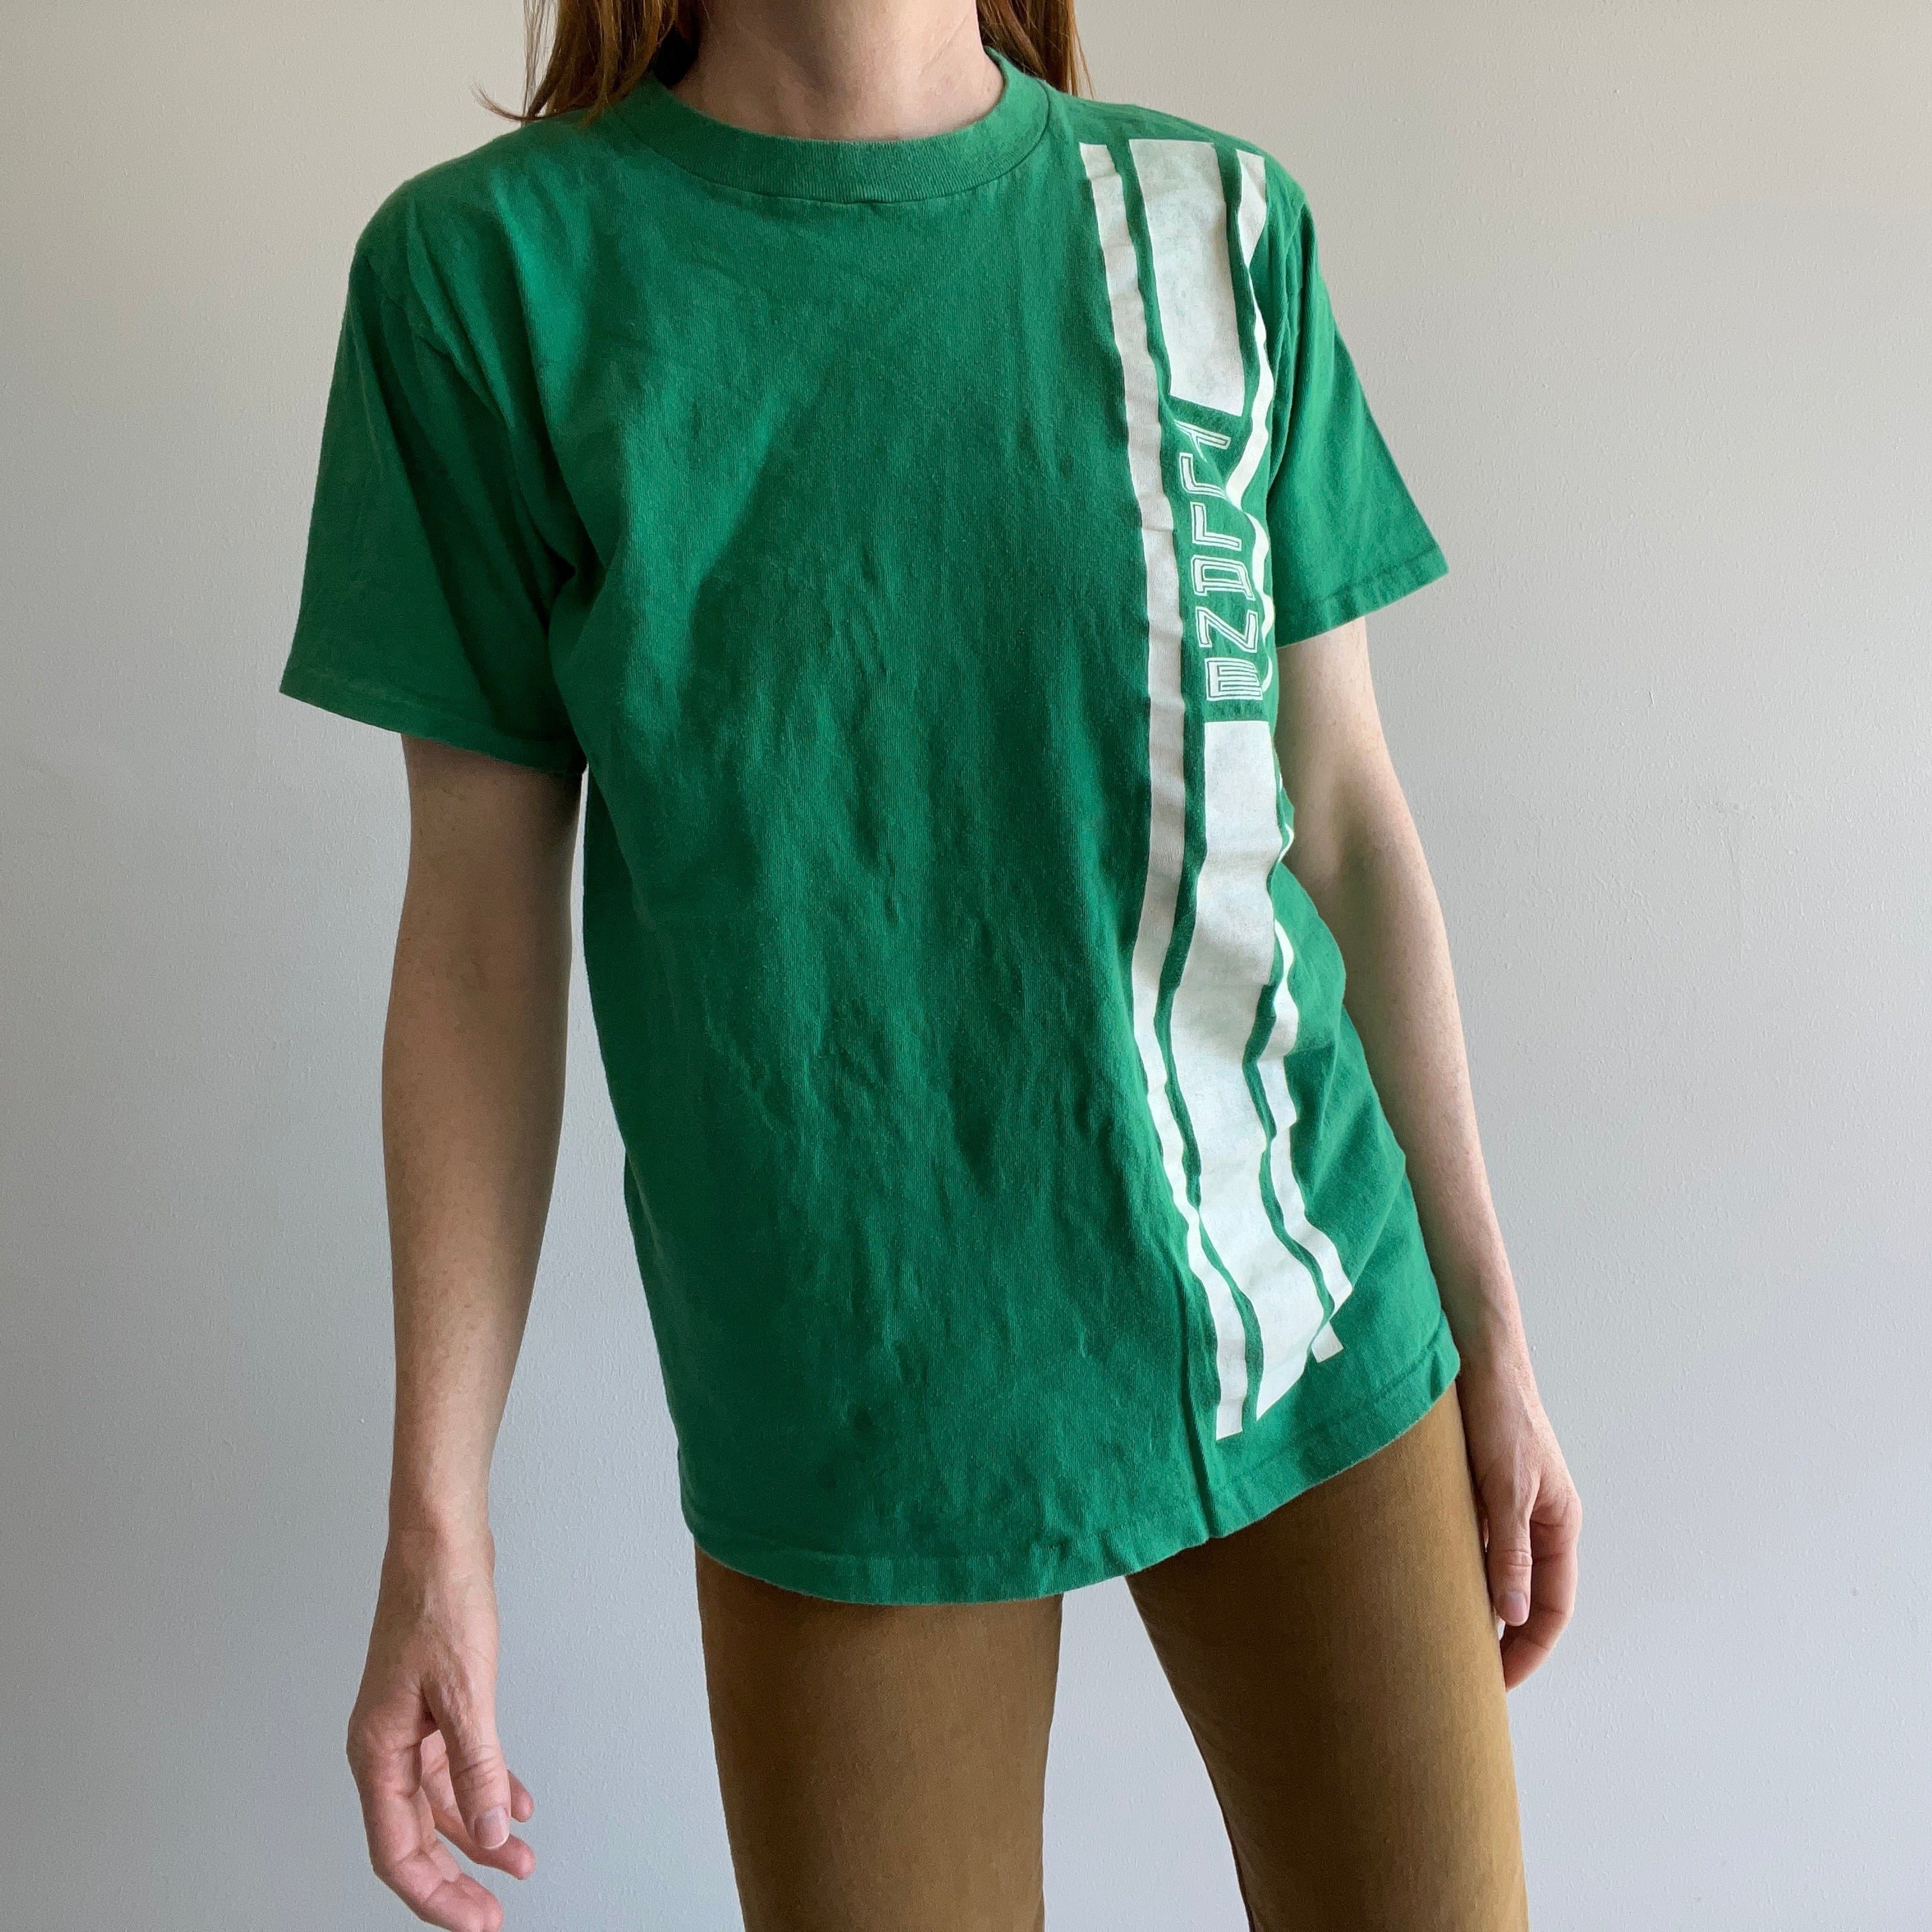 T-shirt taché étrangement de l'université de Tulane des années 1970